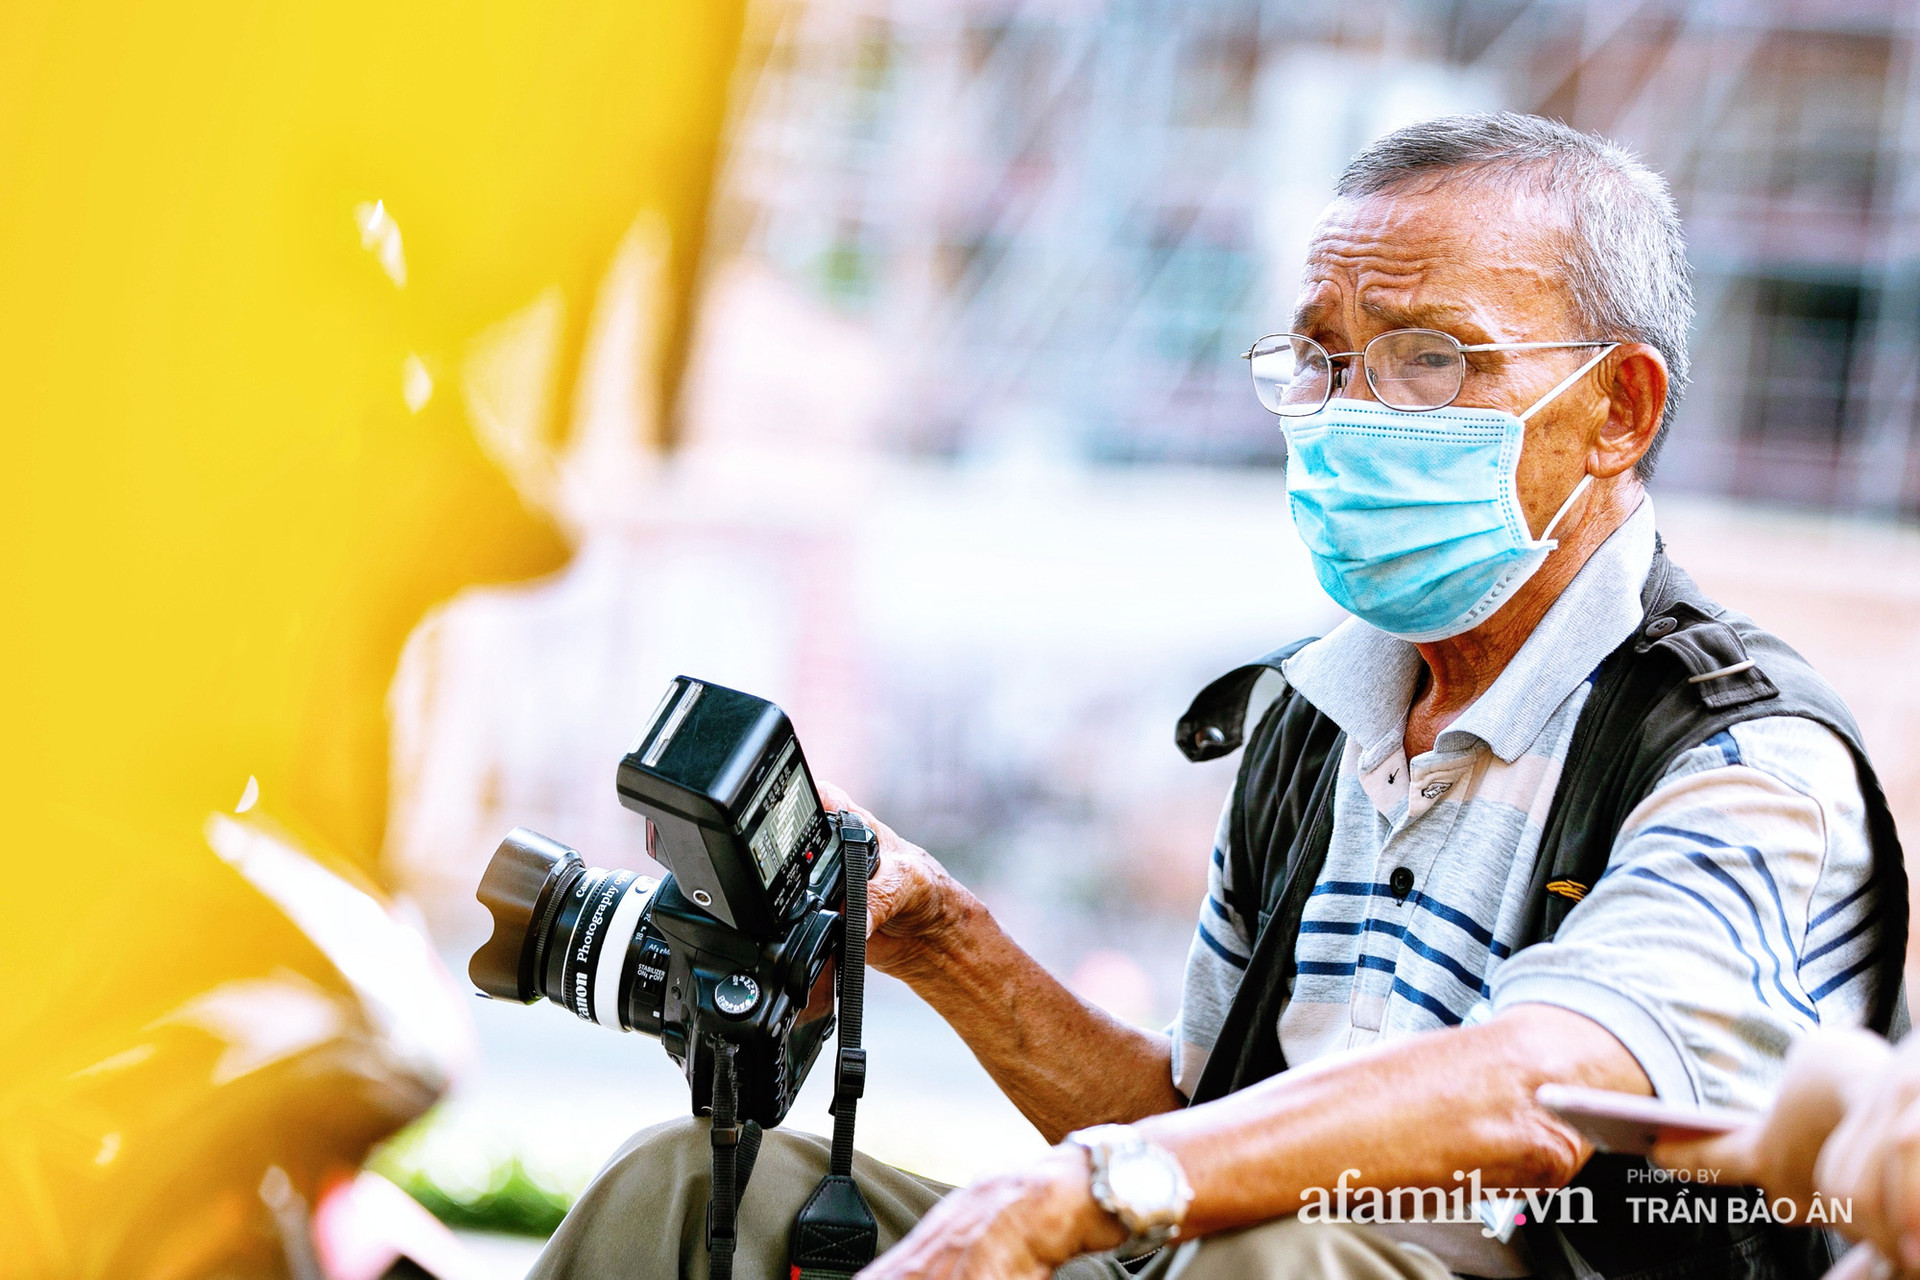  Ông thợ chụp hơn 30 năm đứng chờ ở Bưu điện TP lao đao vì Sài Gòn vào dịch, chạnh lòng 20 nghìn một bức ảnh kỳ công cũng không bằng cái nút trên điện thoại  - Ảnh 5.